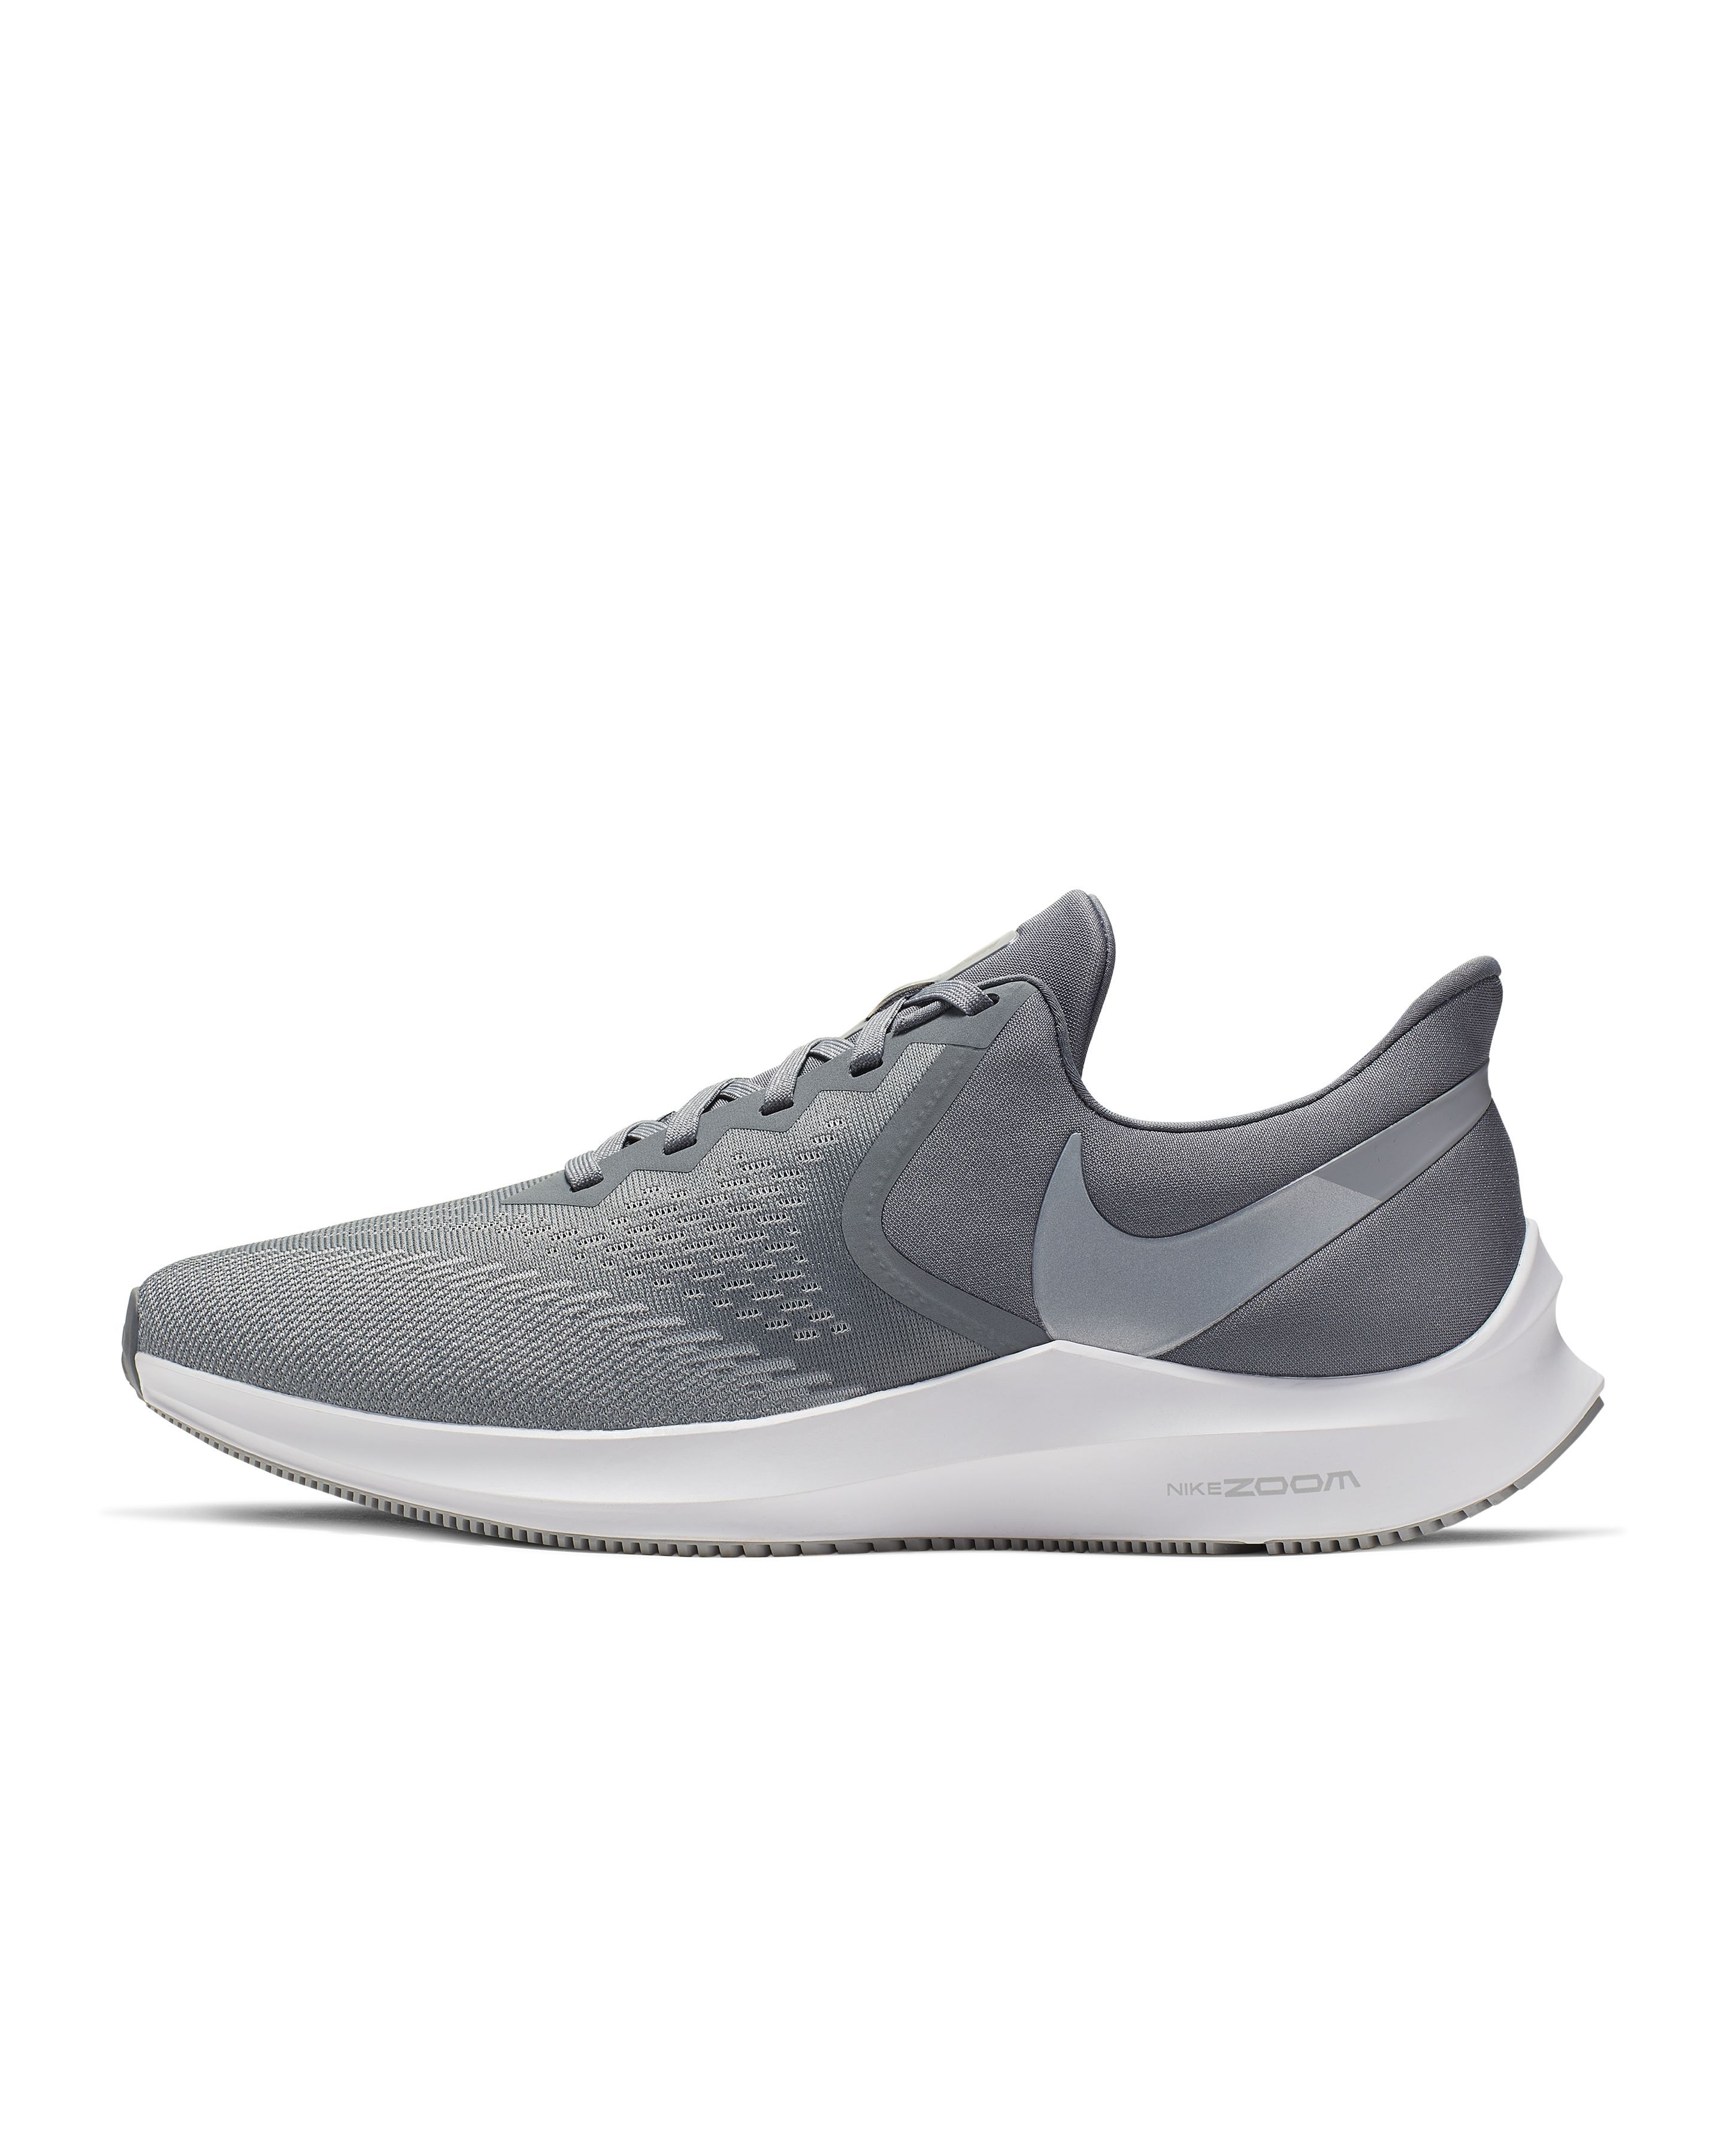 Best Nike Running Shoes | Nike Shoe 